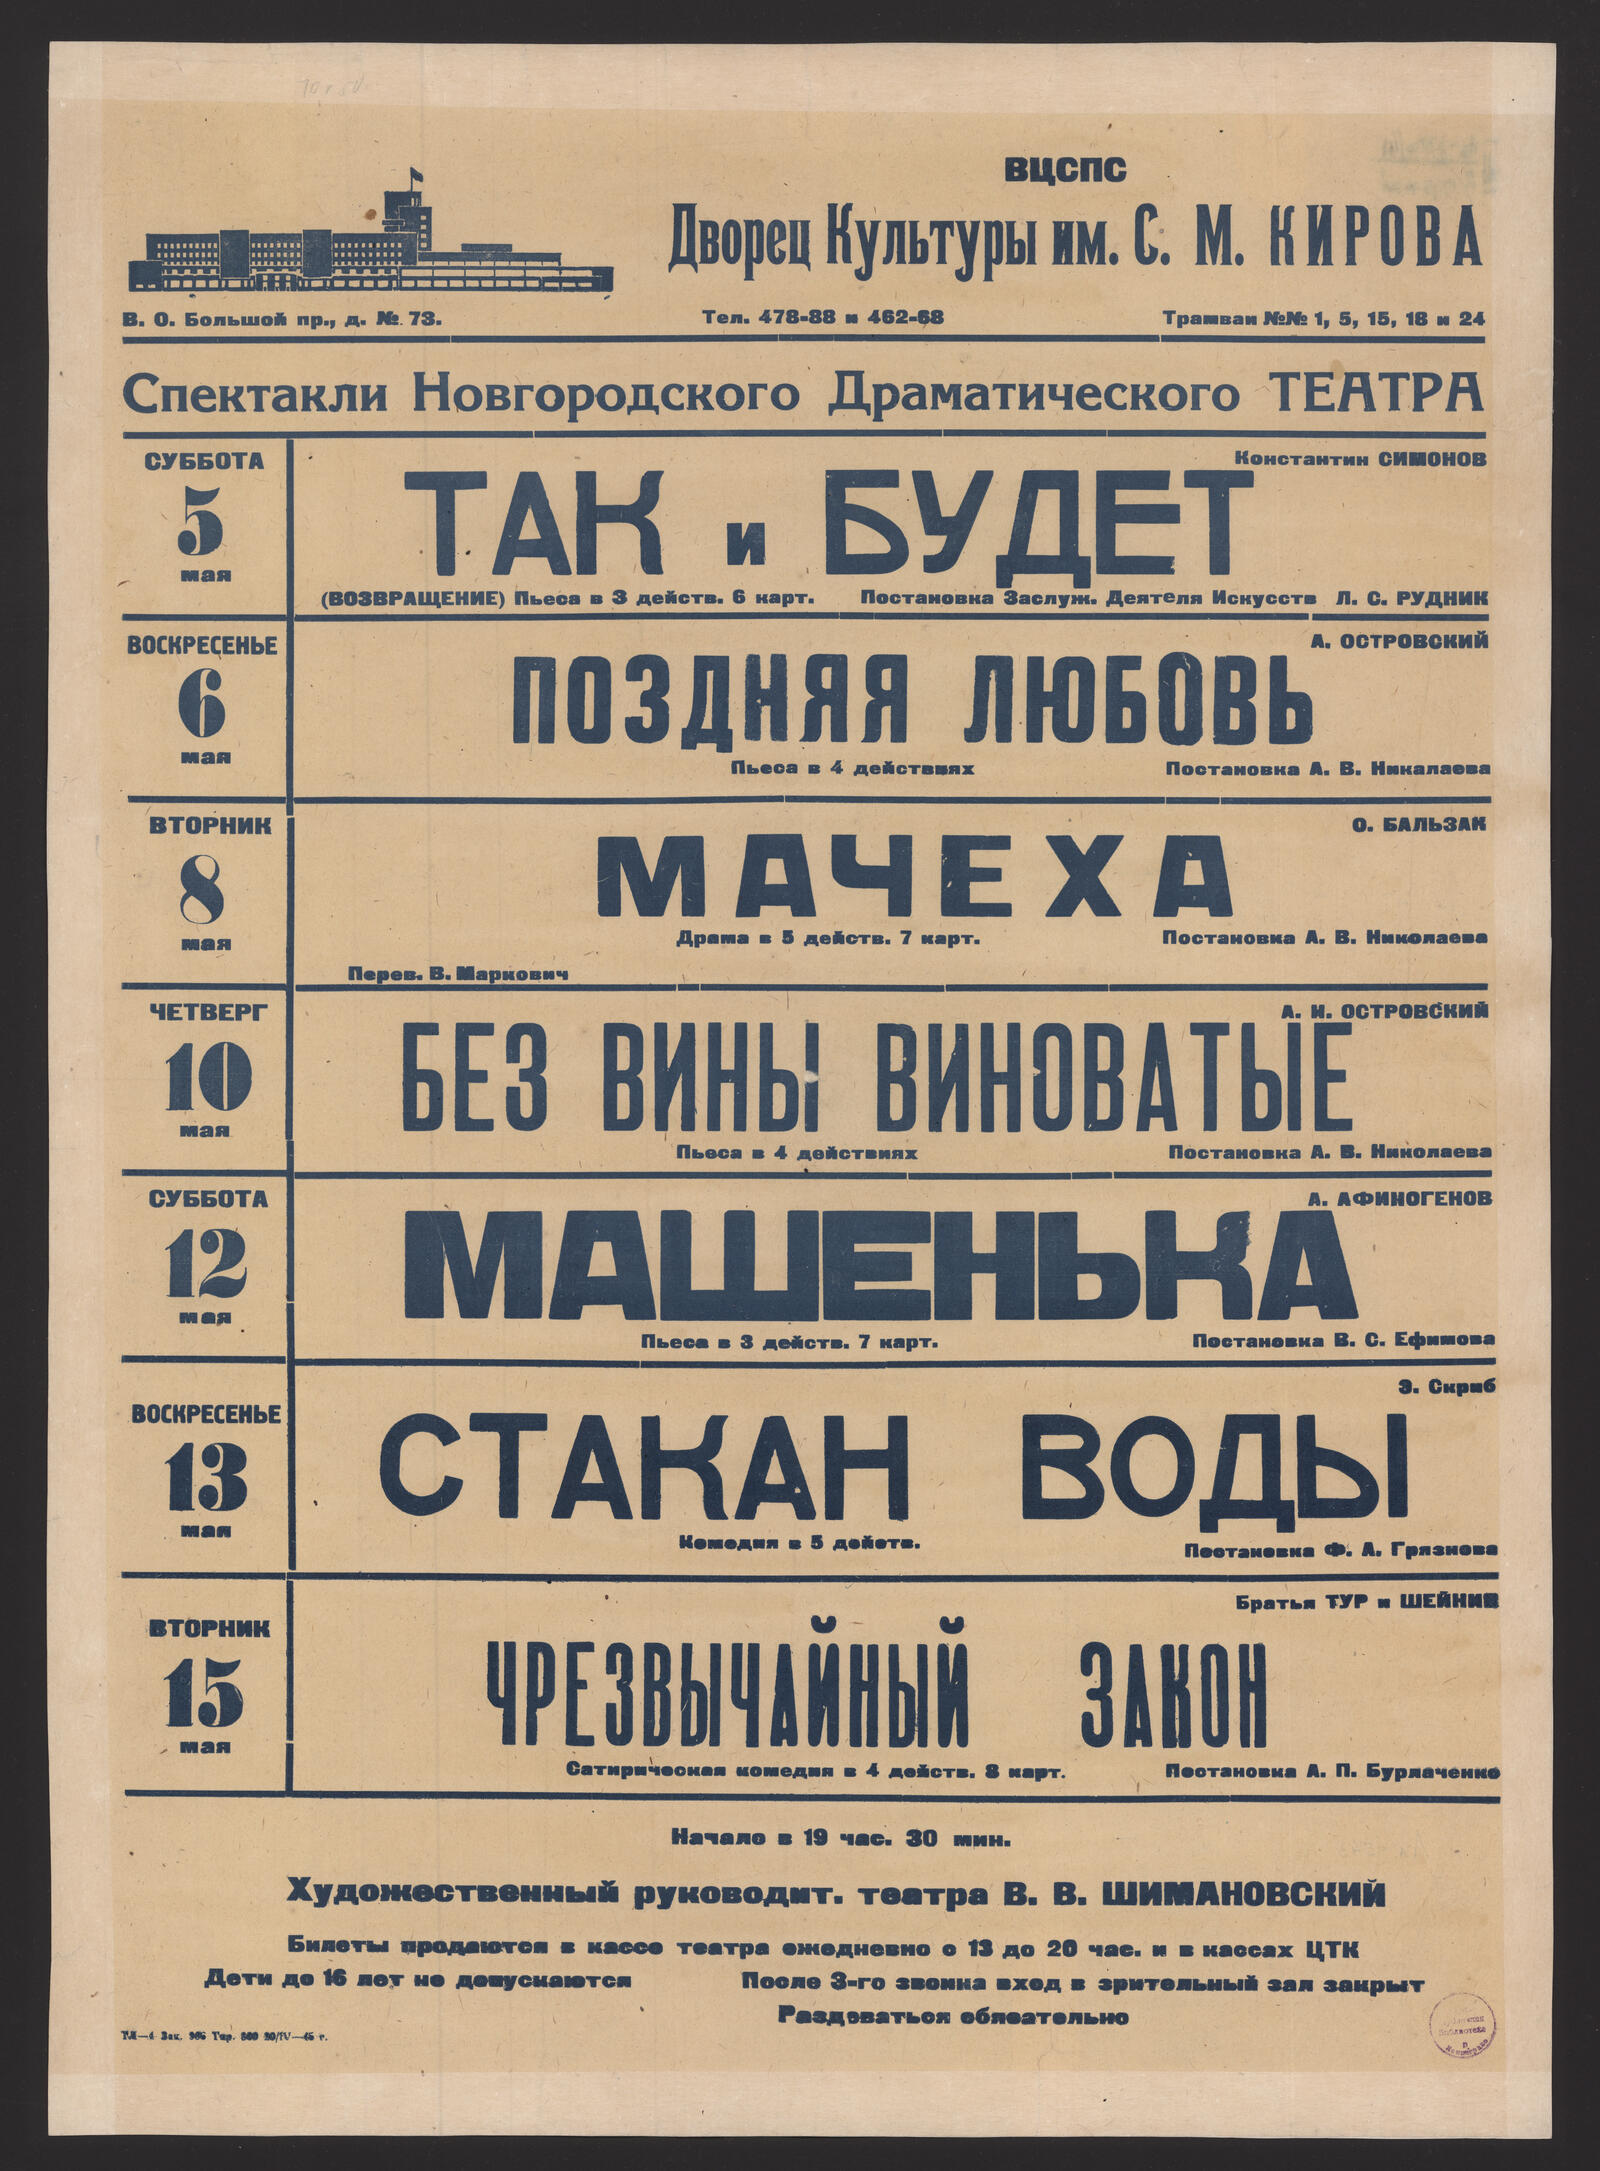 Изображение Спектакли Новгородского Драматического Театра, 1945 г.